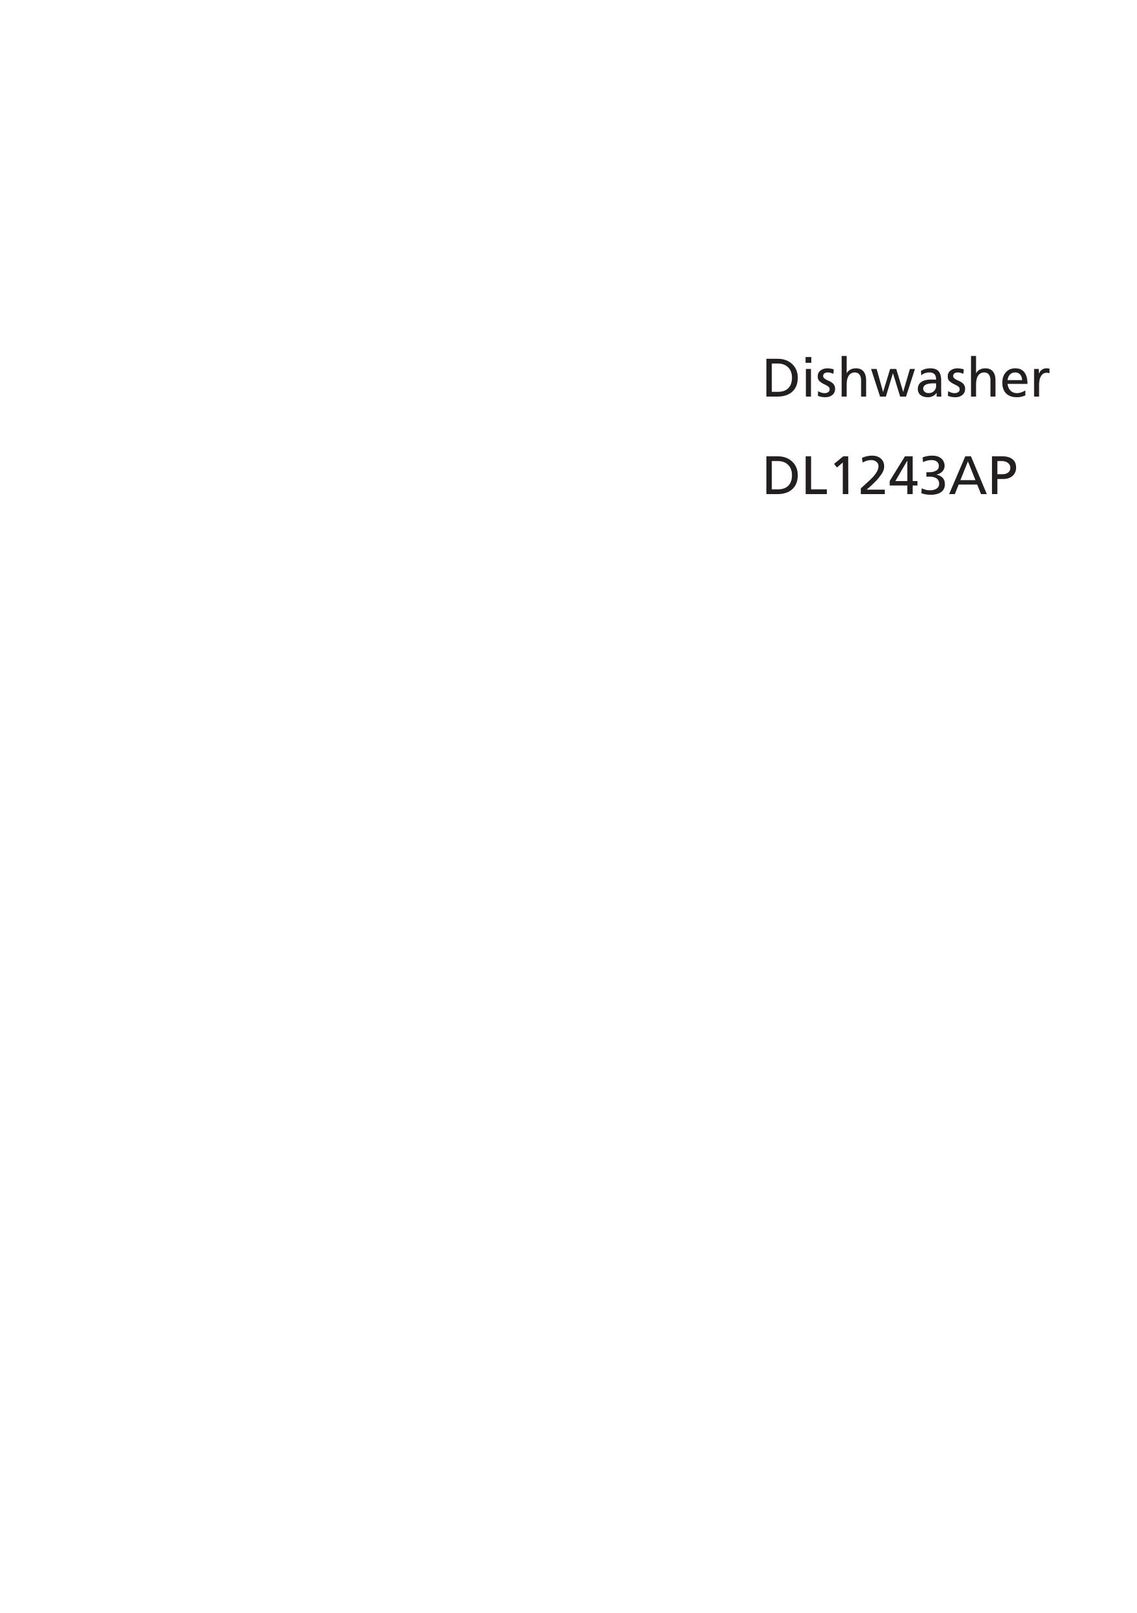 Beko DL1243AP Dishwasher User Manual